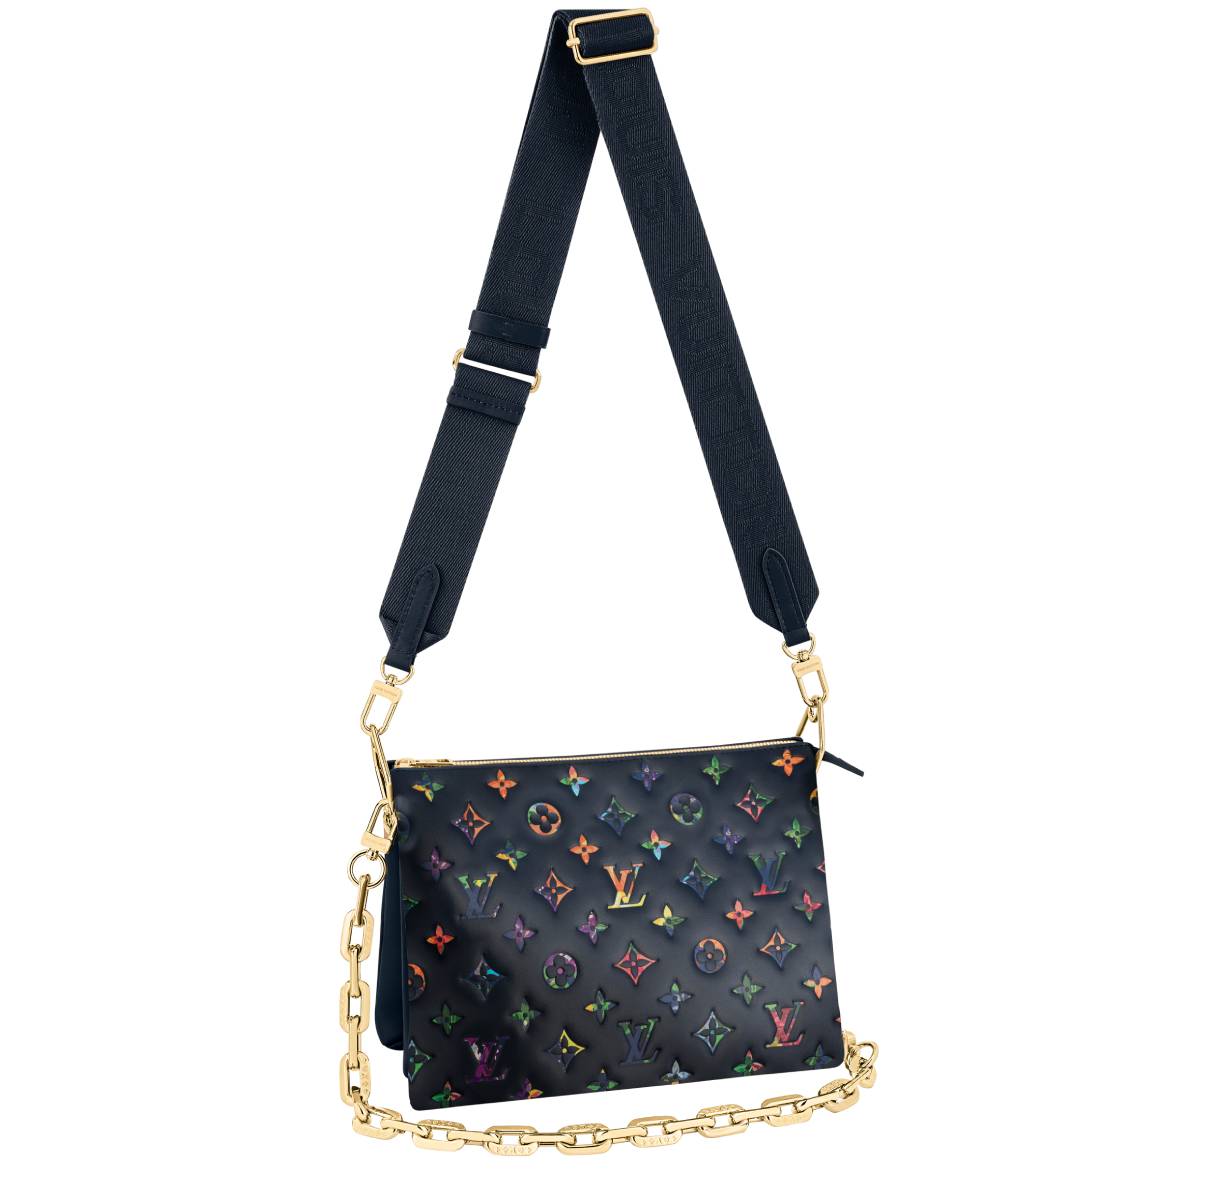 Le sac Coussin de Louis Vuitton